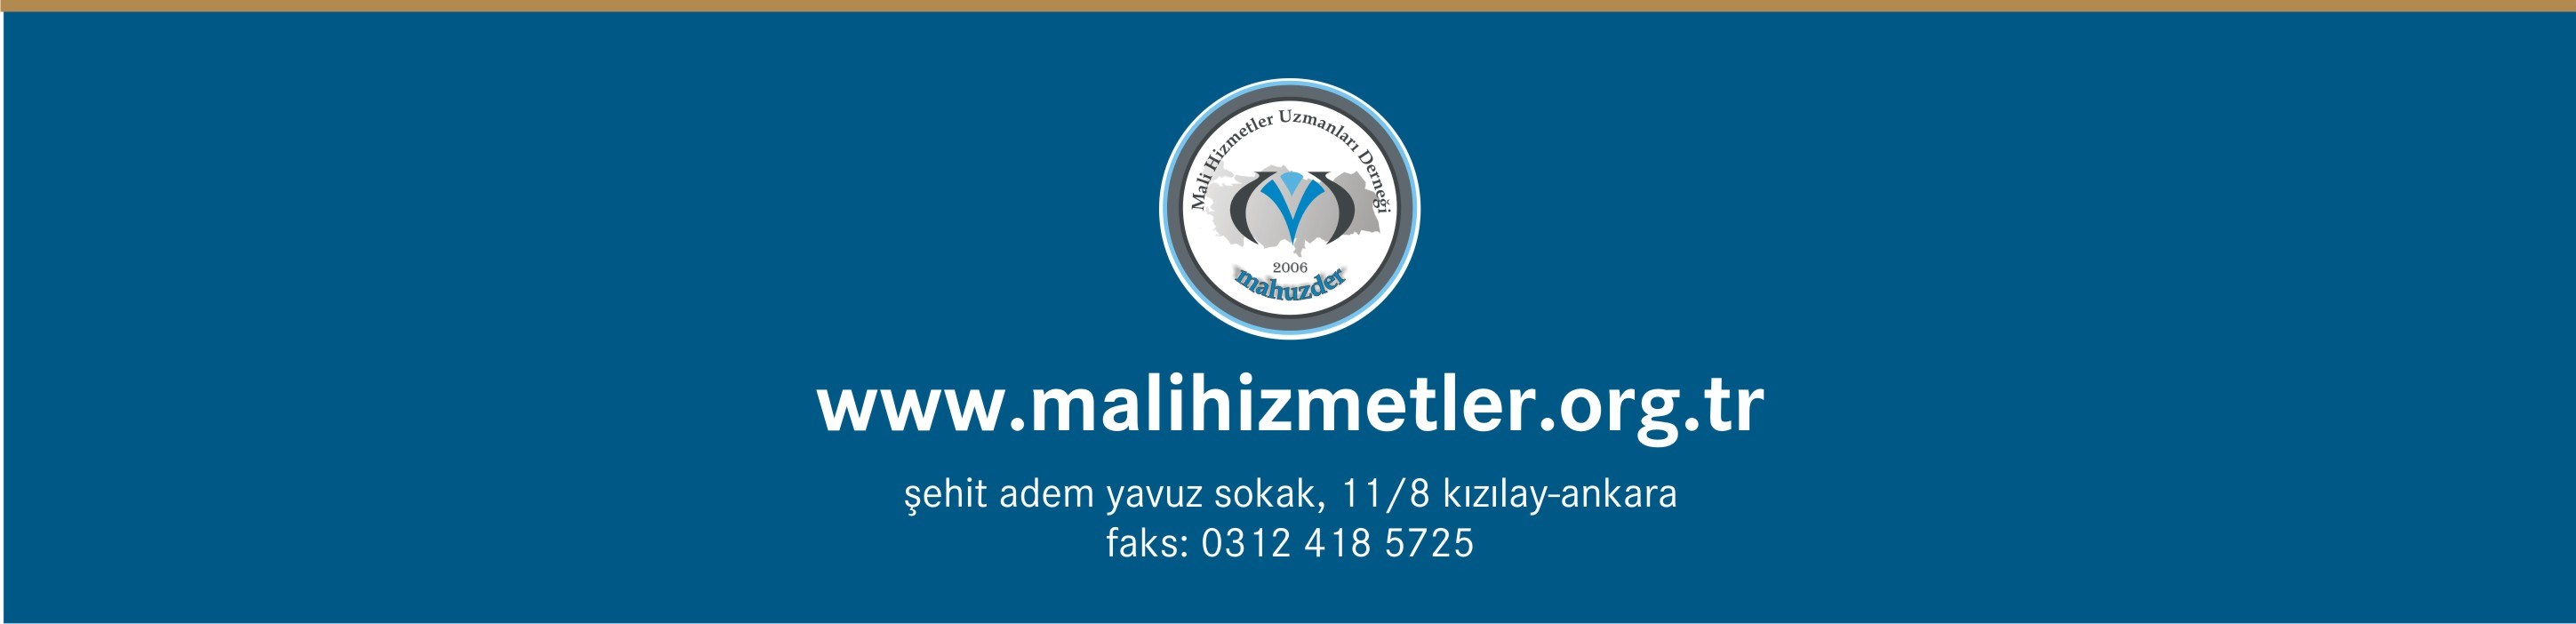 MAHUZDER Fax : Şehit Adem Yavuz Sokak No:11/8 Kızılay / Ankara 0